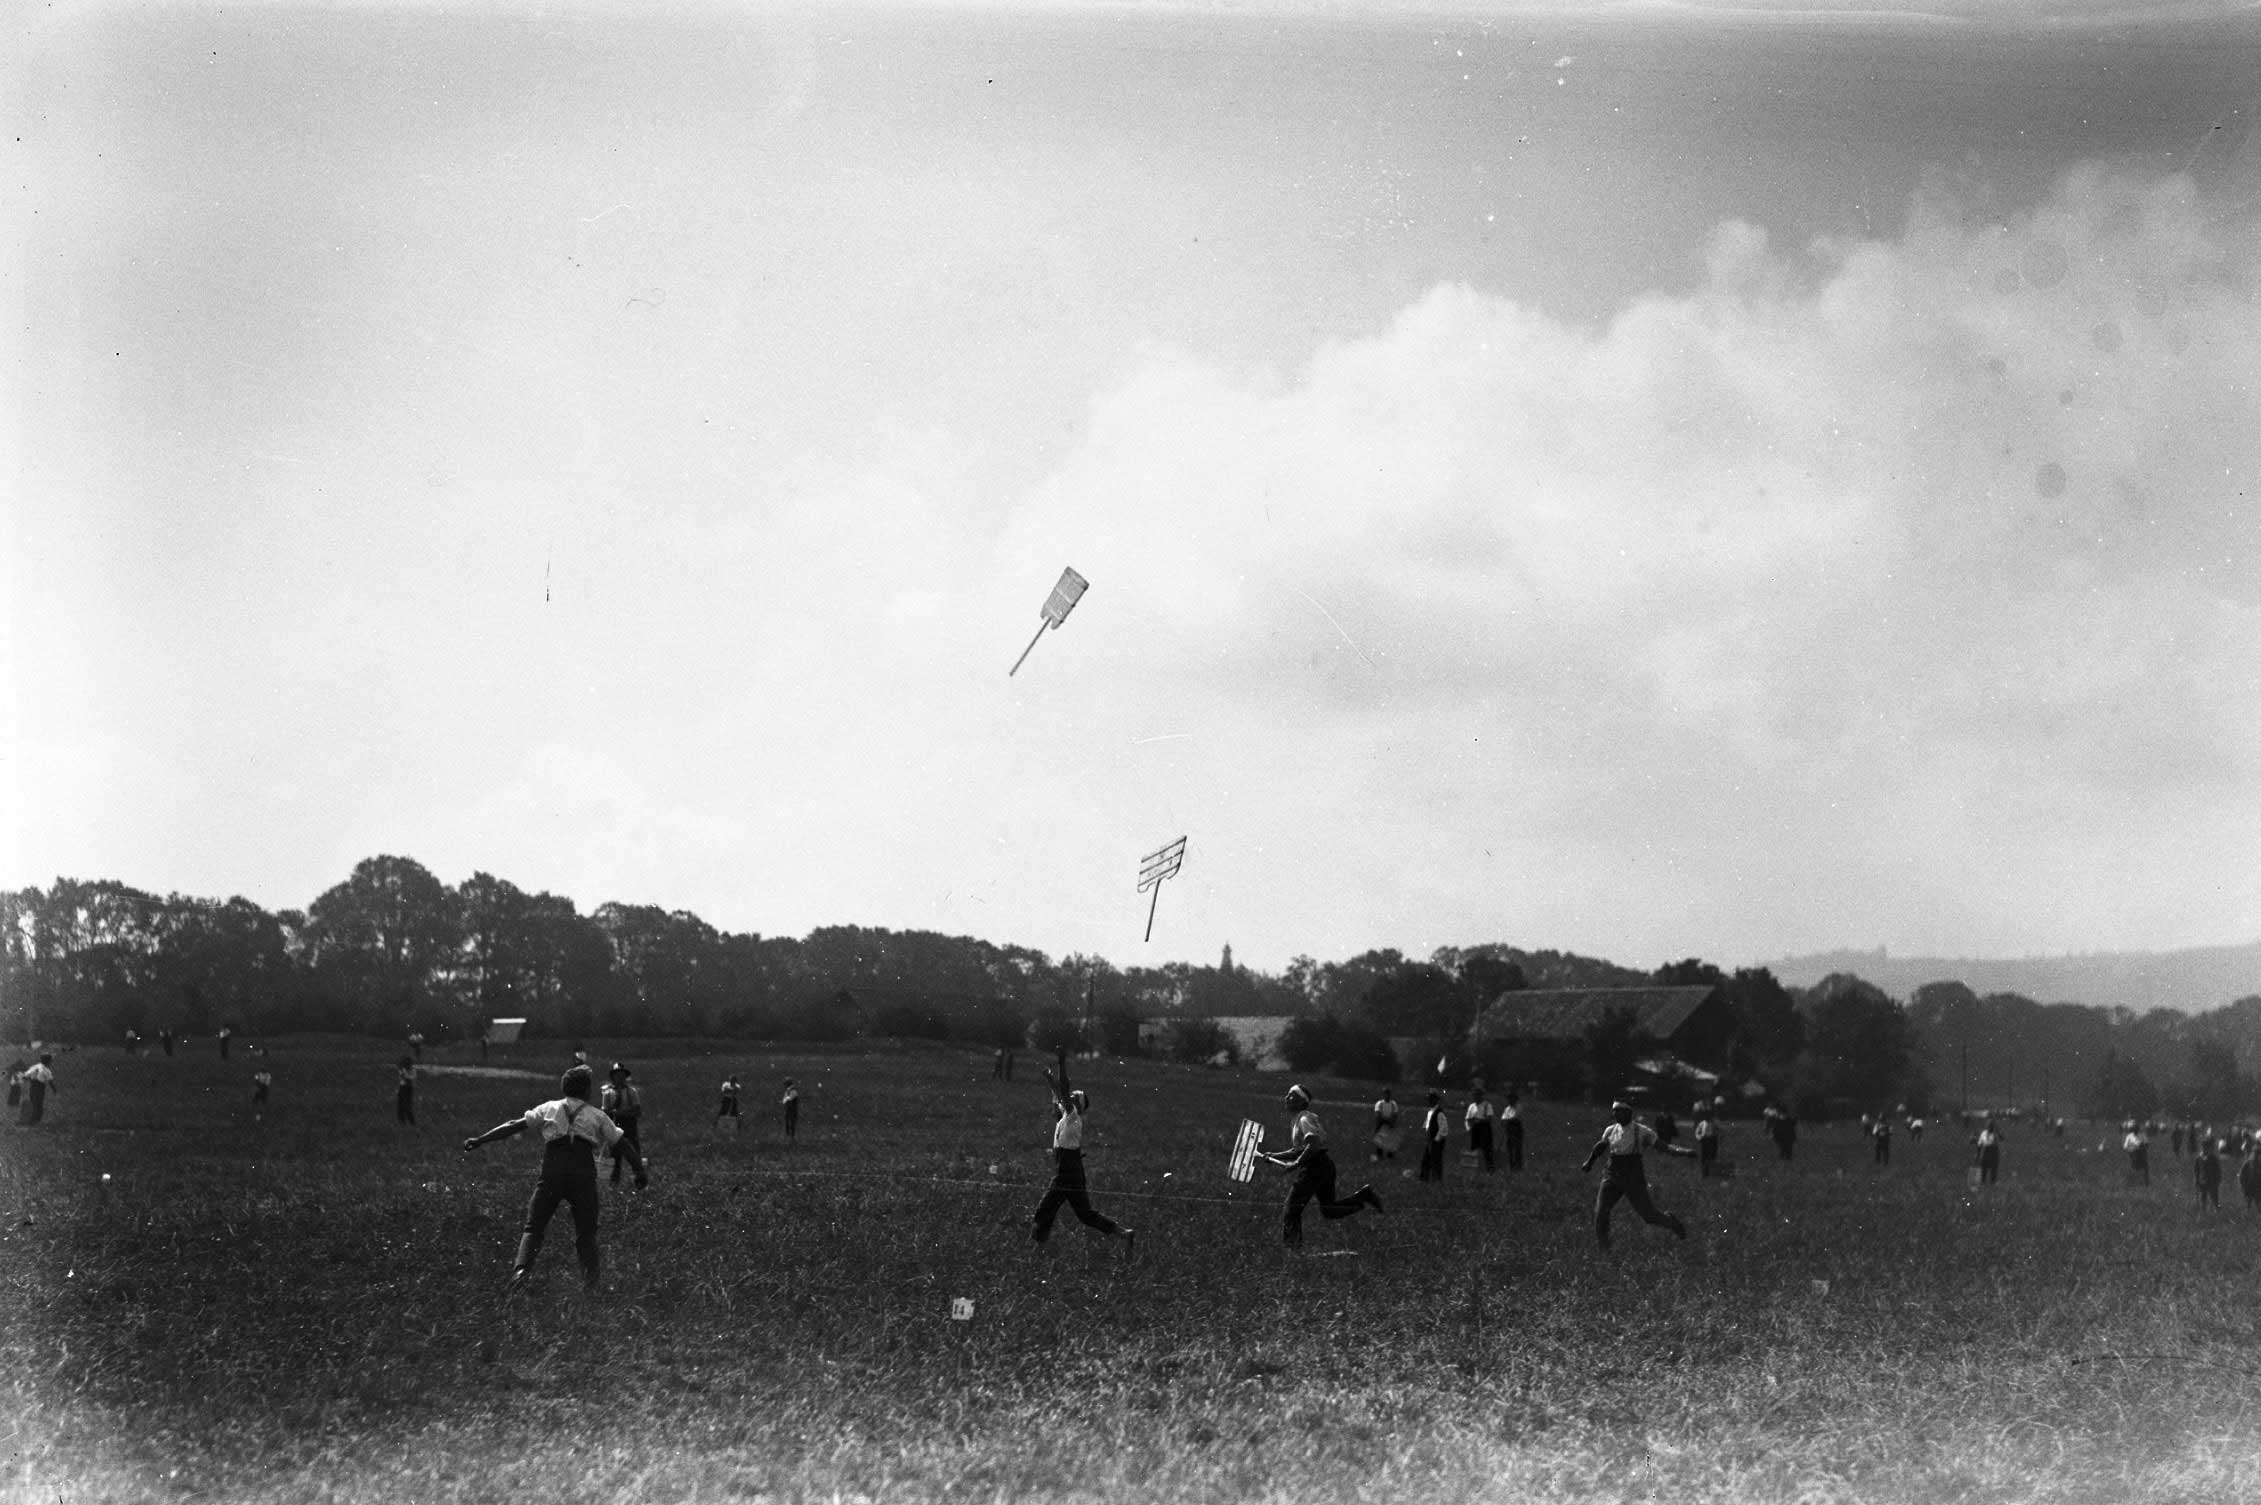 Fête fédérale de hornuss Thoune, 1930: des attrapeurs lancent leur panneau (photo de Carl Jost) © Carl Jost/Staatsarchiv Bern